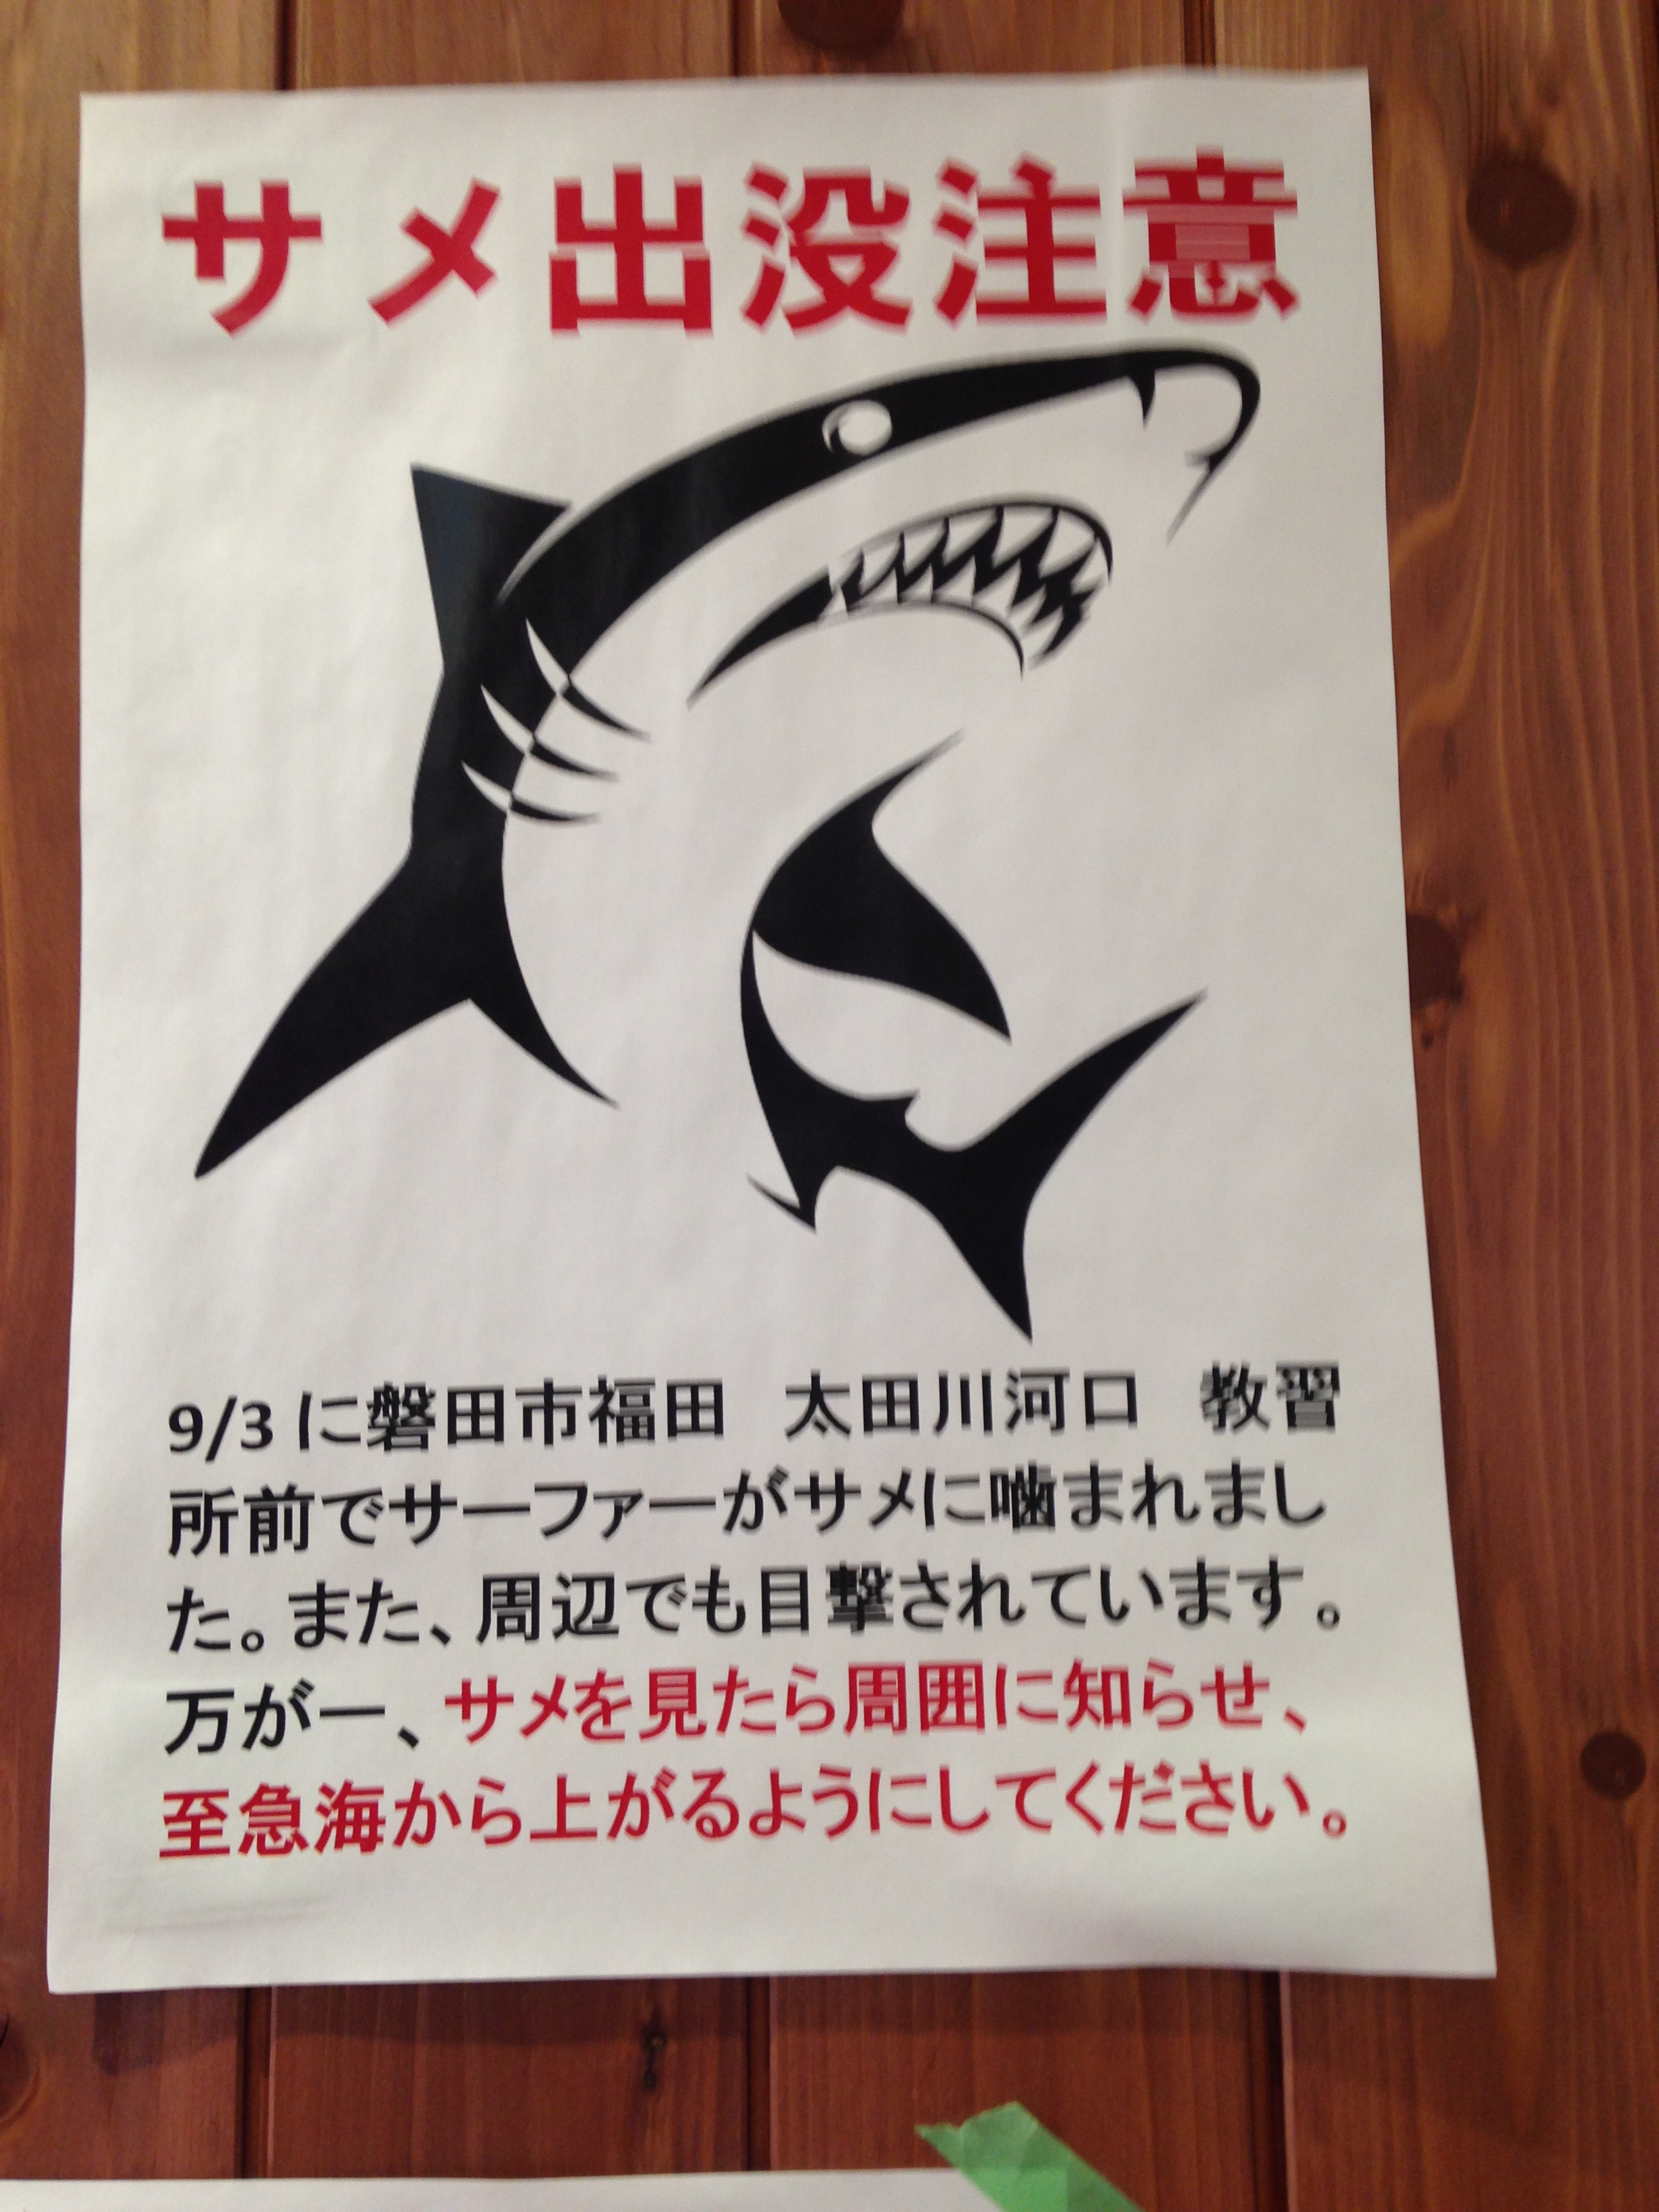 サメの出没での注意喚起